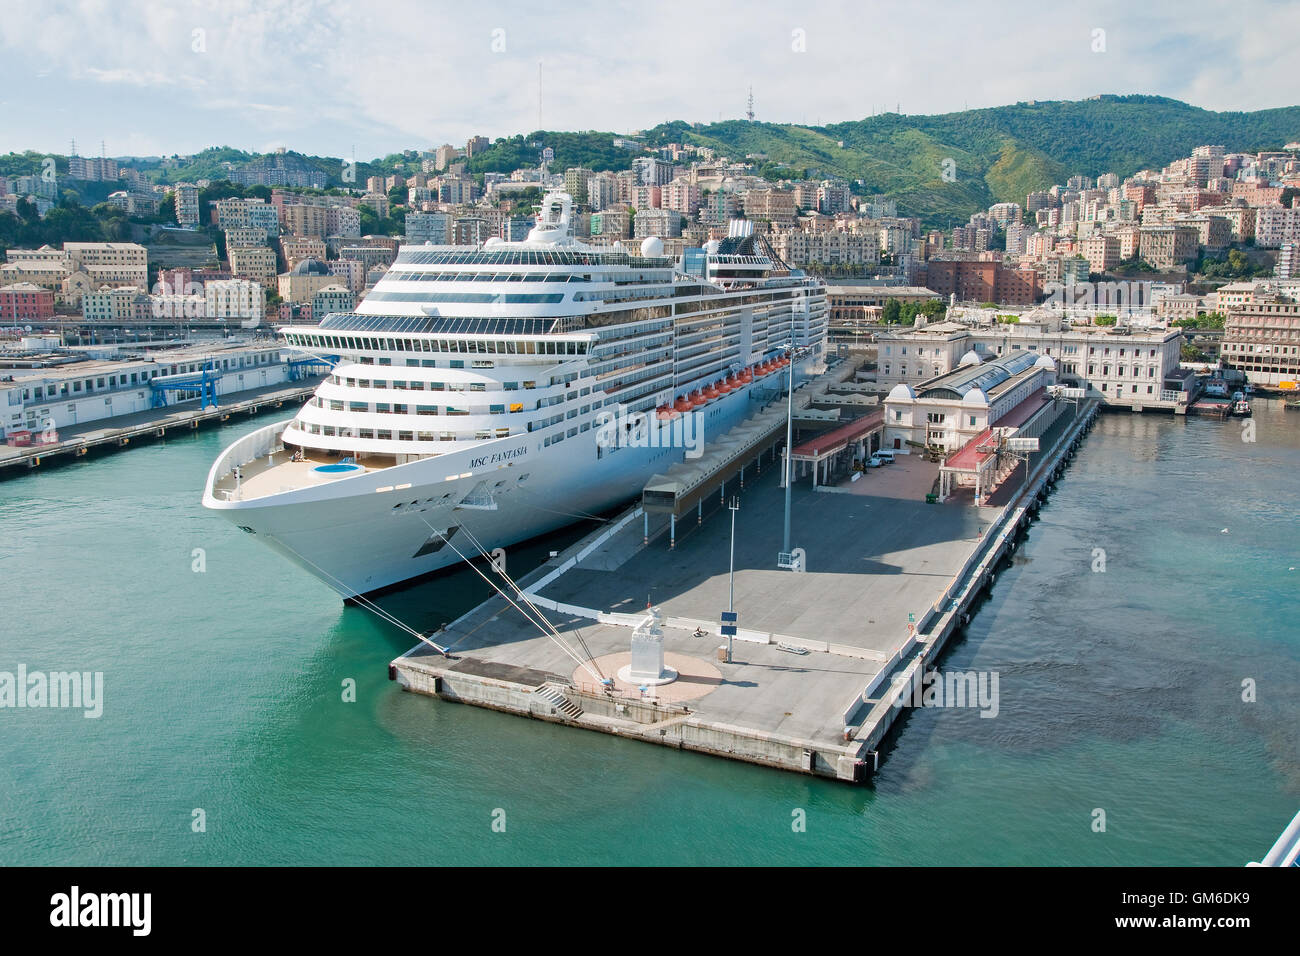 Nave da crociera MSC Fantasia al terminal delle navi da crociera, porto di Genova, Italia Foto Stock